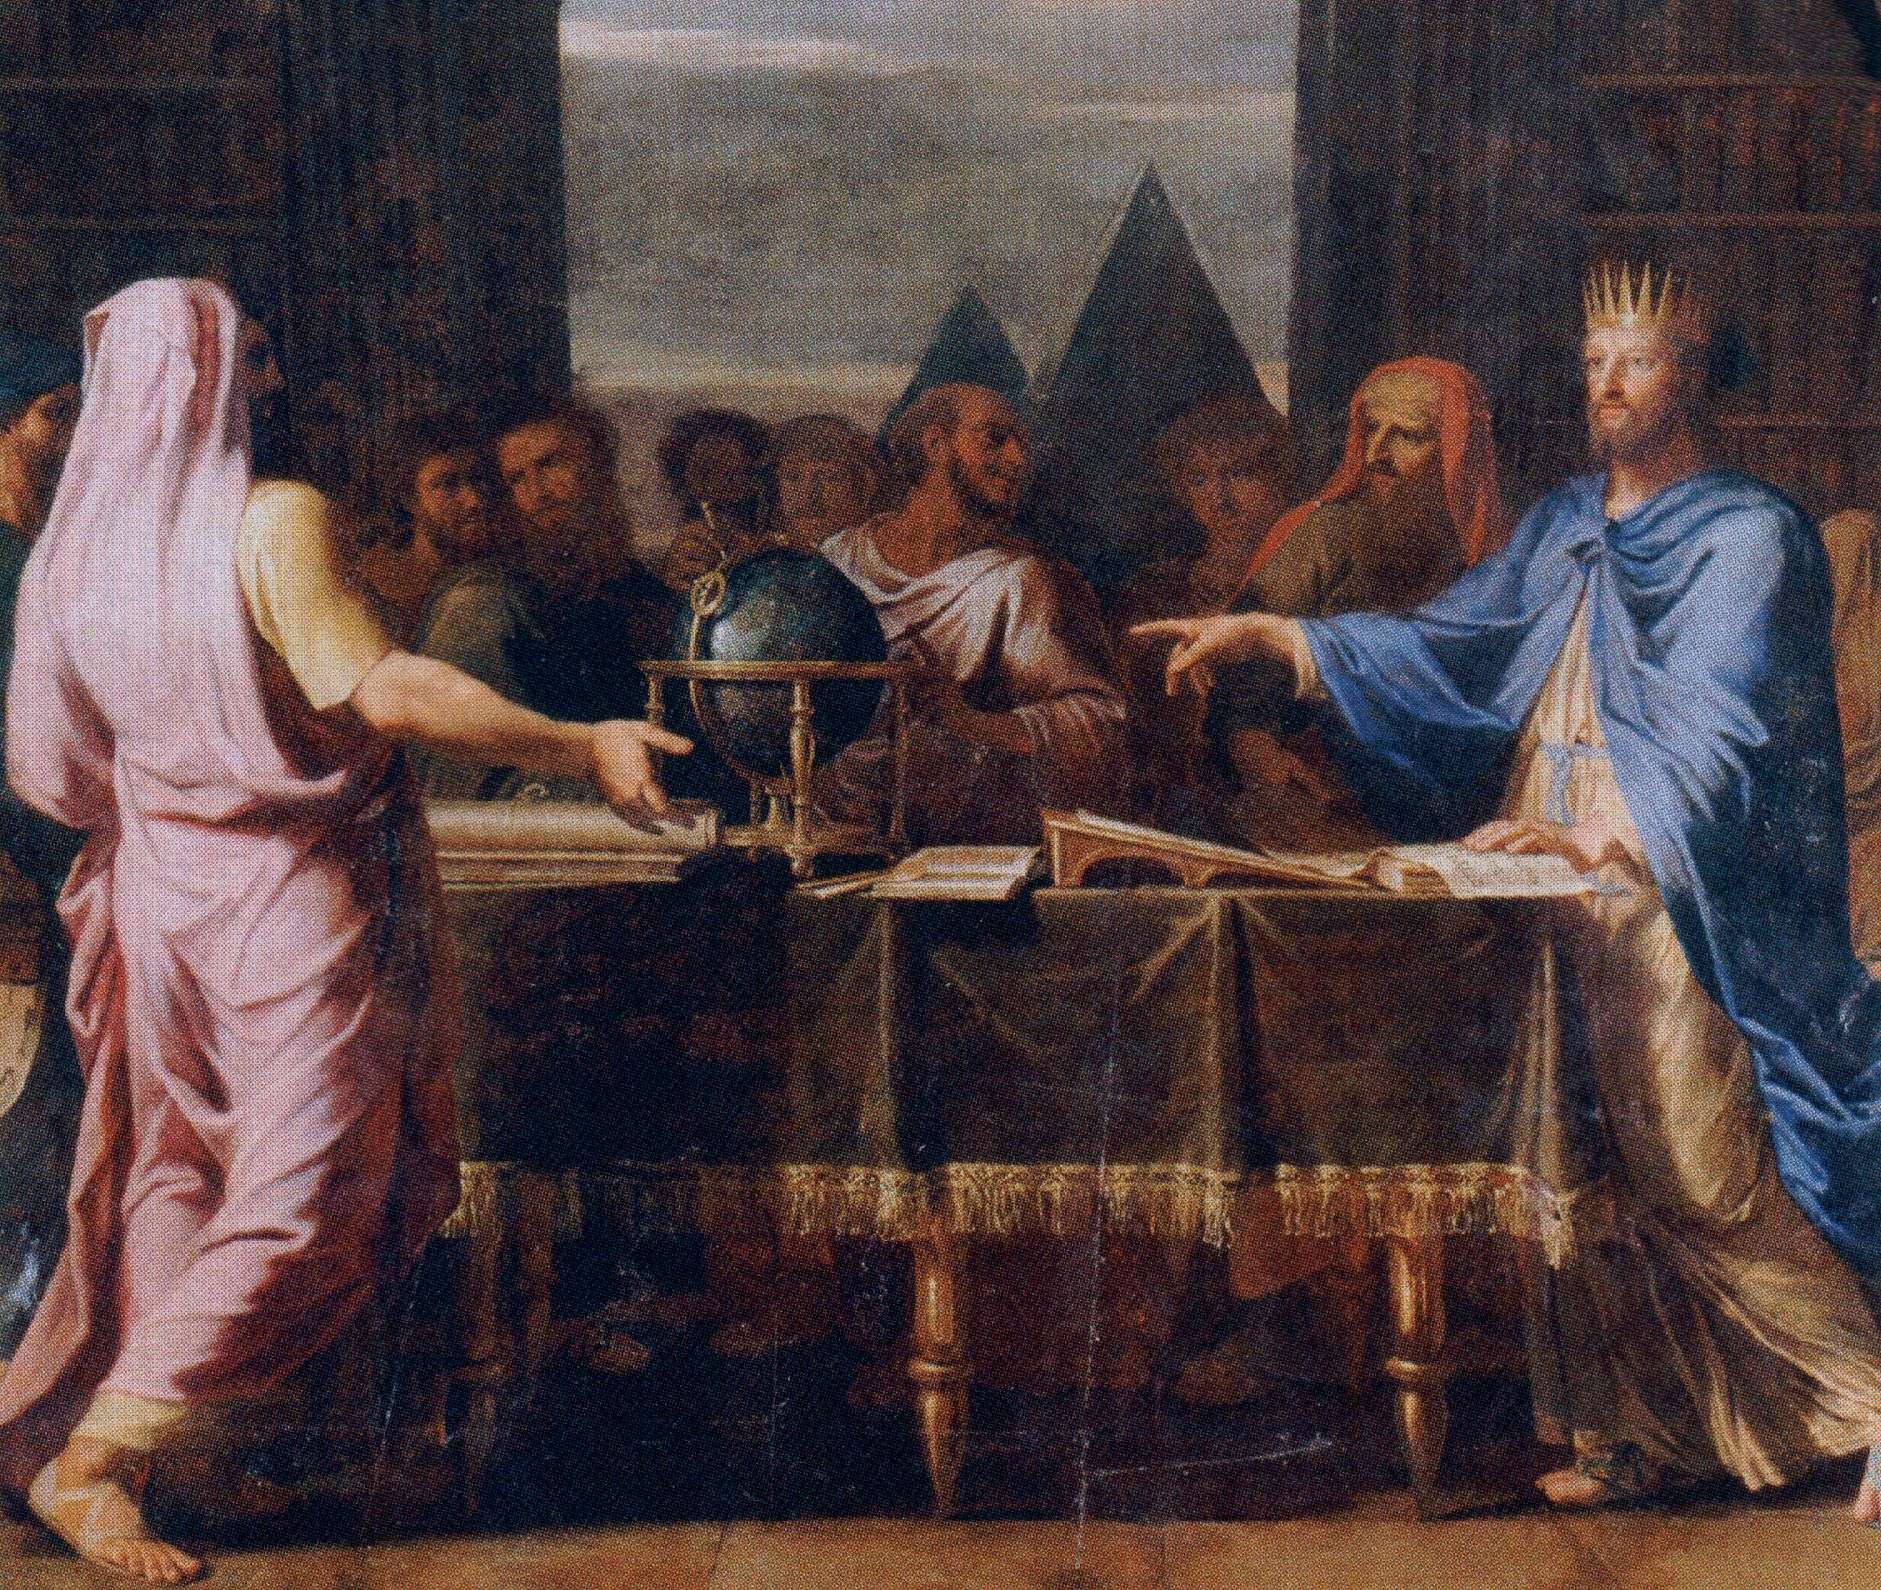 Ο βασιλιάς της Αιγύπτου Πτολεµαίος Β΄ ο Φιλάδελφος συνοµιλεί στη Βιβλιοθήκη της Αλεξάνδρειας µε του 72 εβραίους σοφούς που µμεταφράζουν τη Βίβλο στα Ελληνικά. Έργο του Jean-Baptiste de Champaigne (1672).